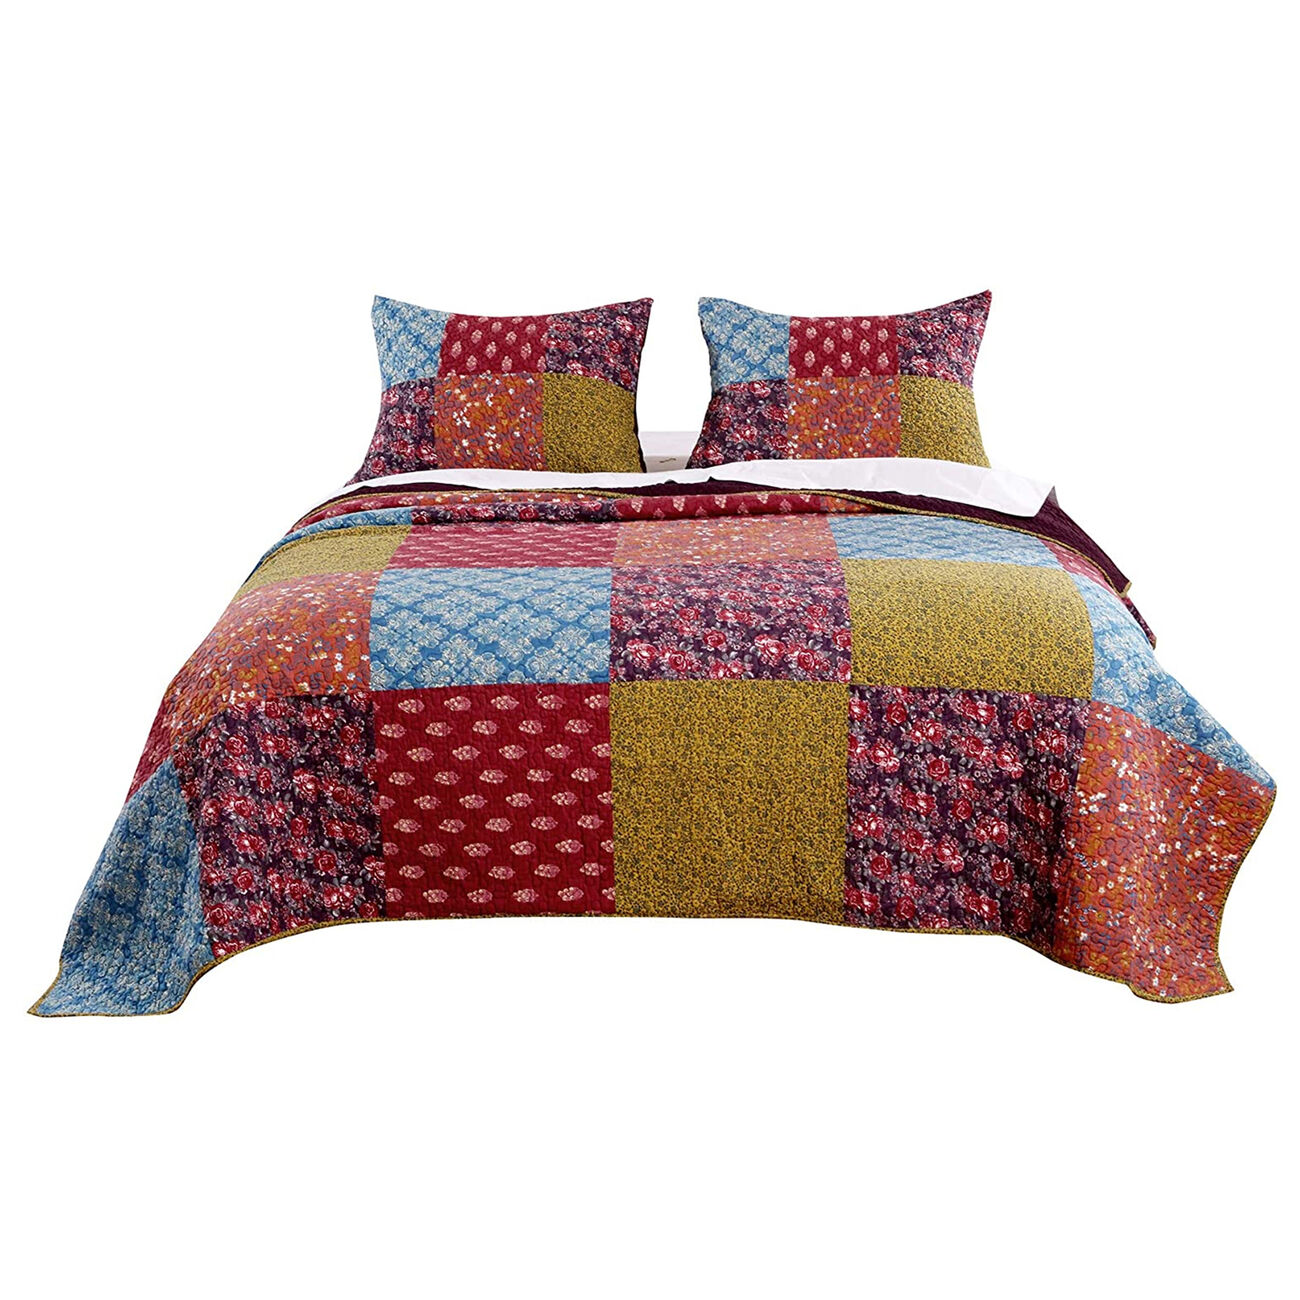 3 Piece Cotton Queen Size Quilt Set with Patchwork, Multicolor - BM223404